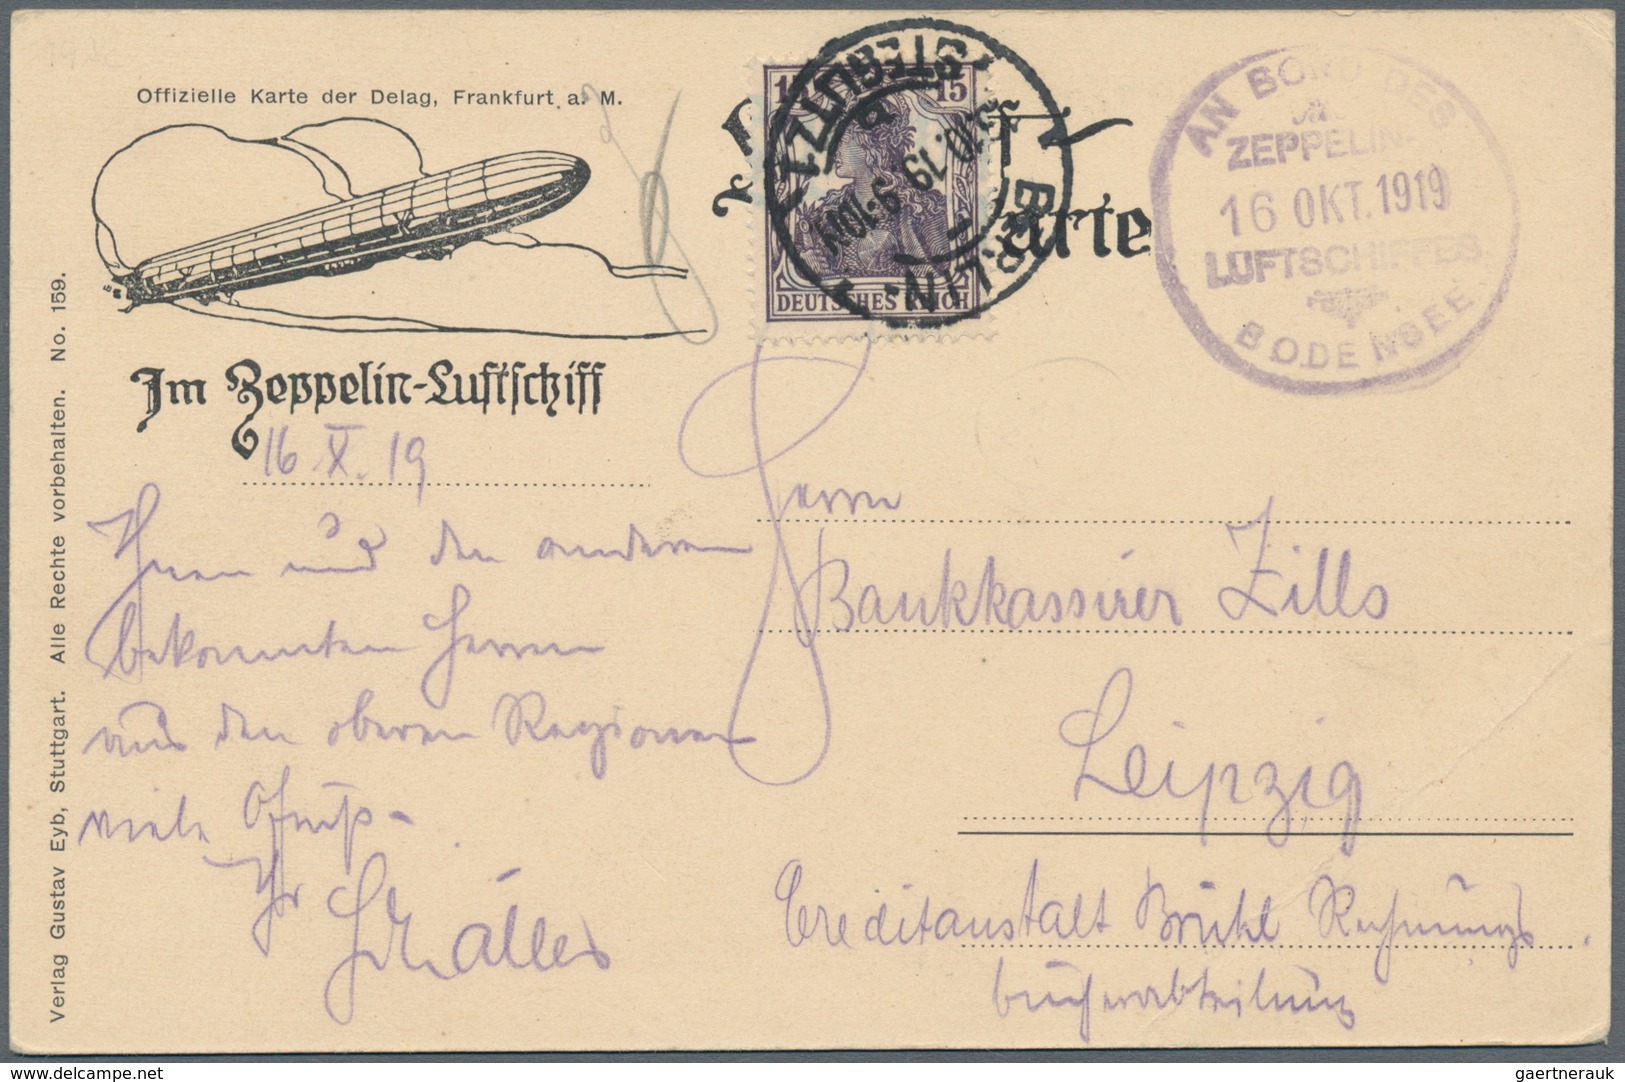 00637 Zeppelinpost Deutschland: 1919, LZ 120 Bodensee, Delag Card From "Berlin-Steglitz" With Board Cancel - Luchtpost & Zeppelin